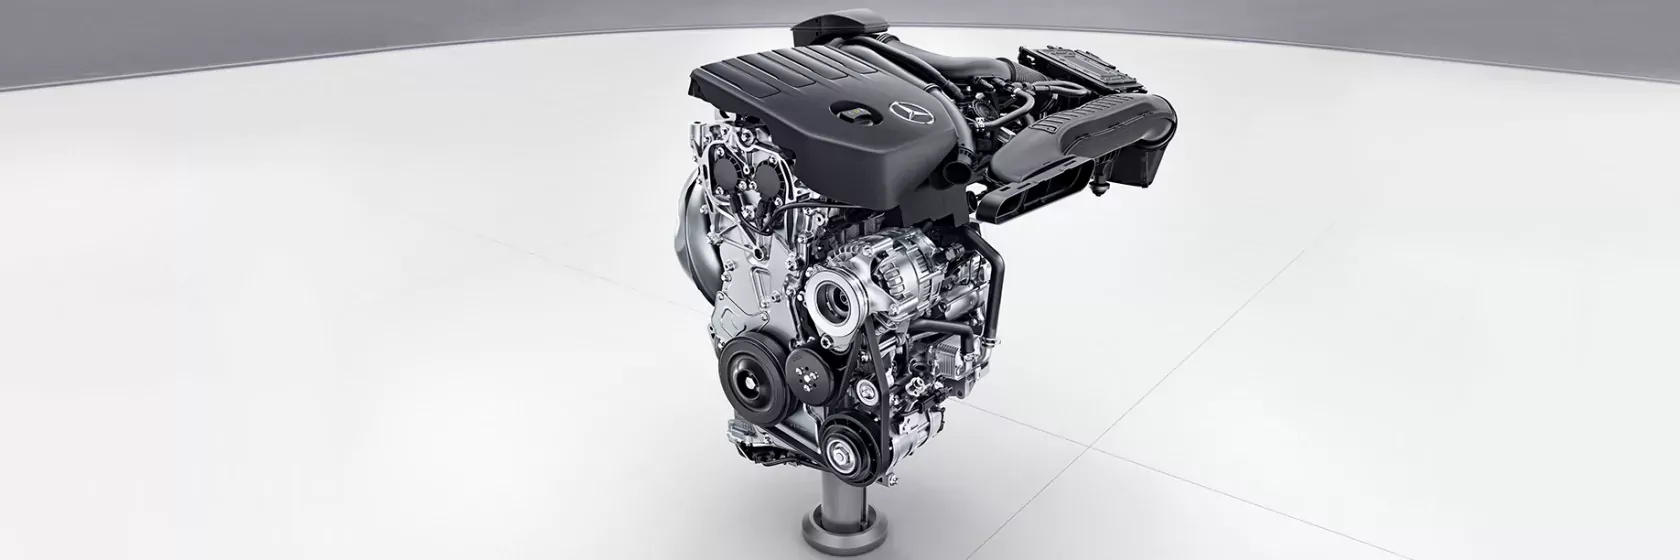 Основные факты про Mercedes-Benz A-Class Хэтчбек Выбор двигателя Мерседес А-класса